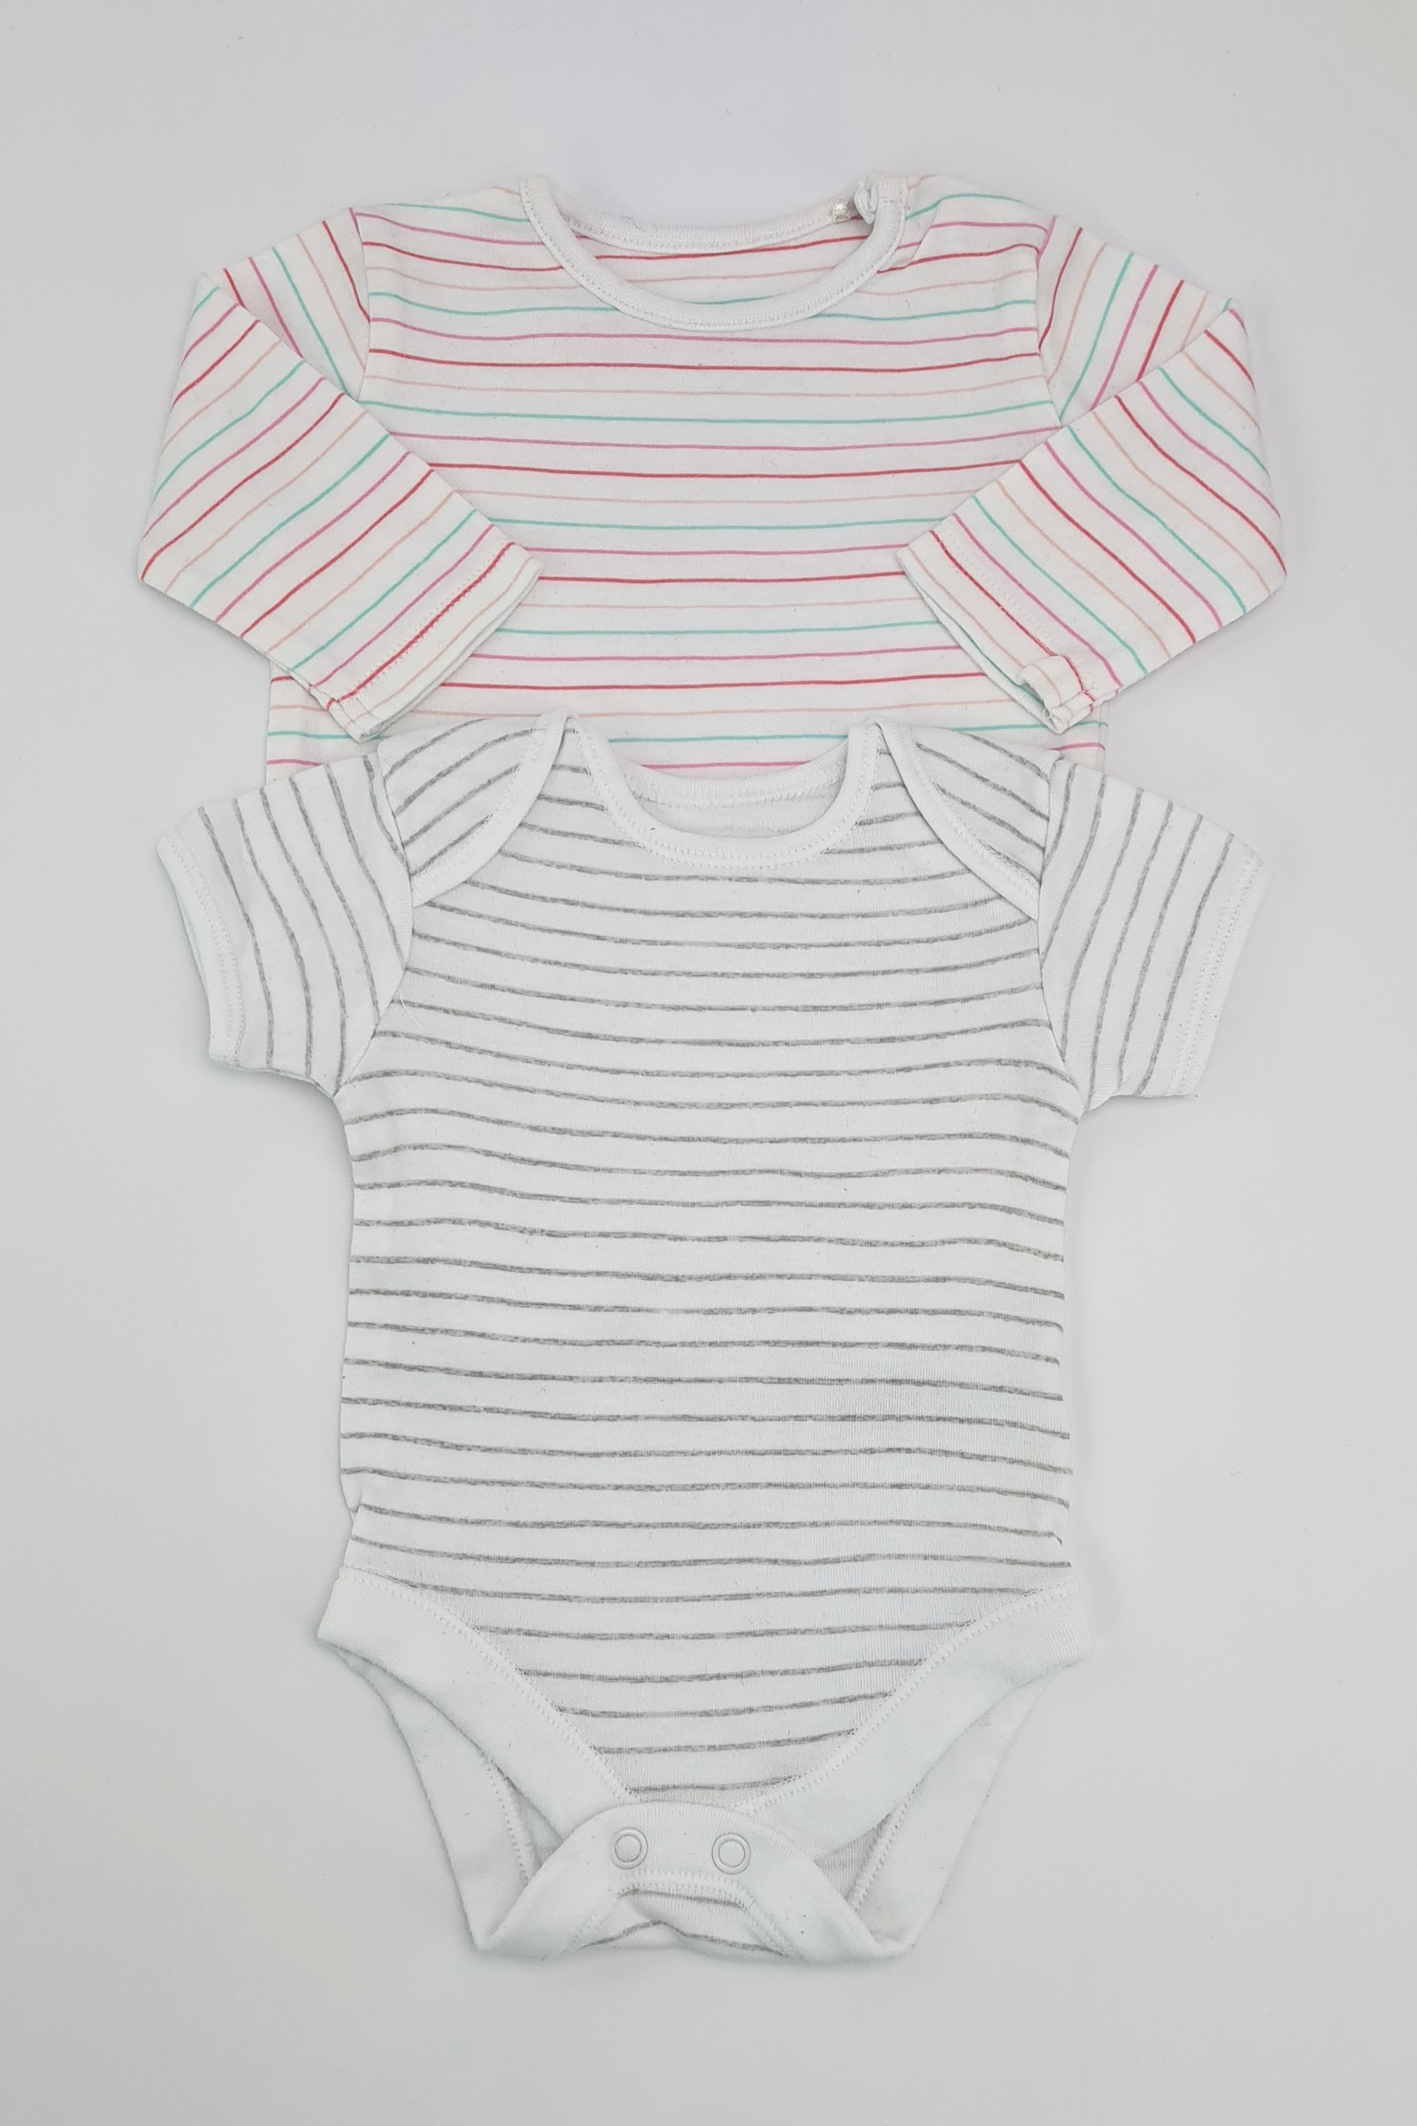 Newborn (9lbs) - 2 Striped Bodysuits